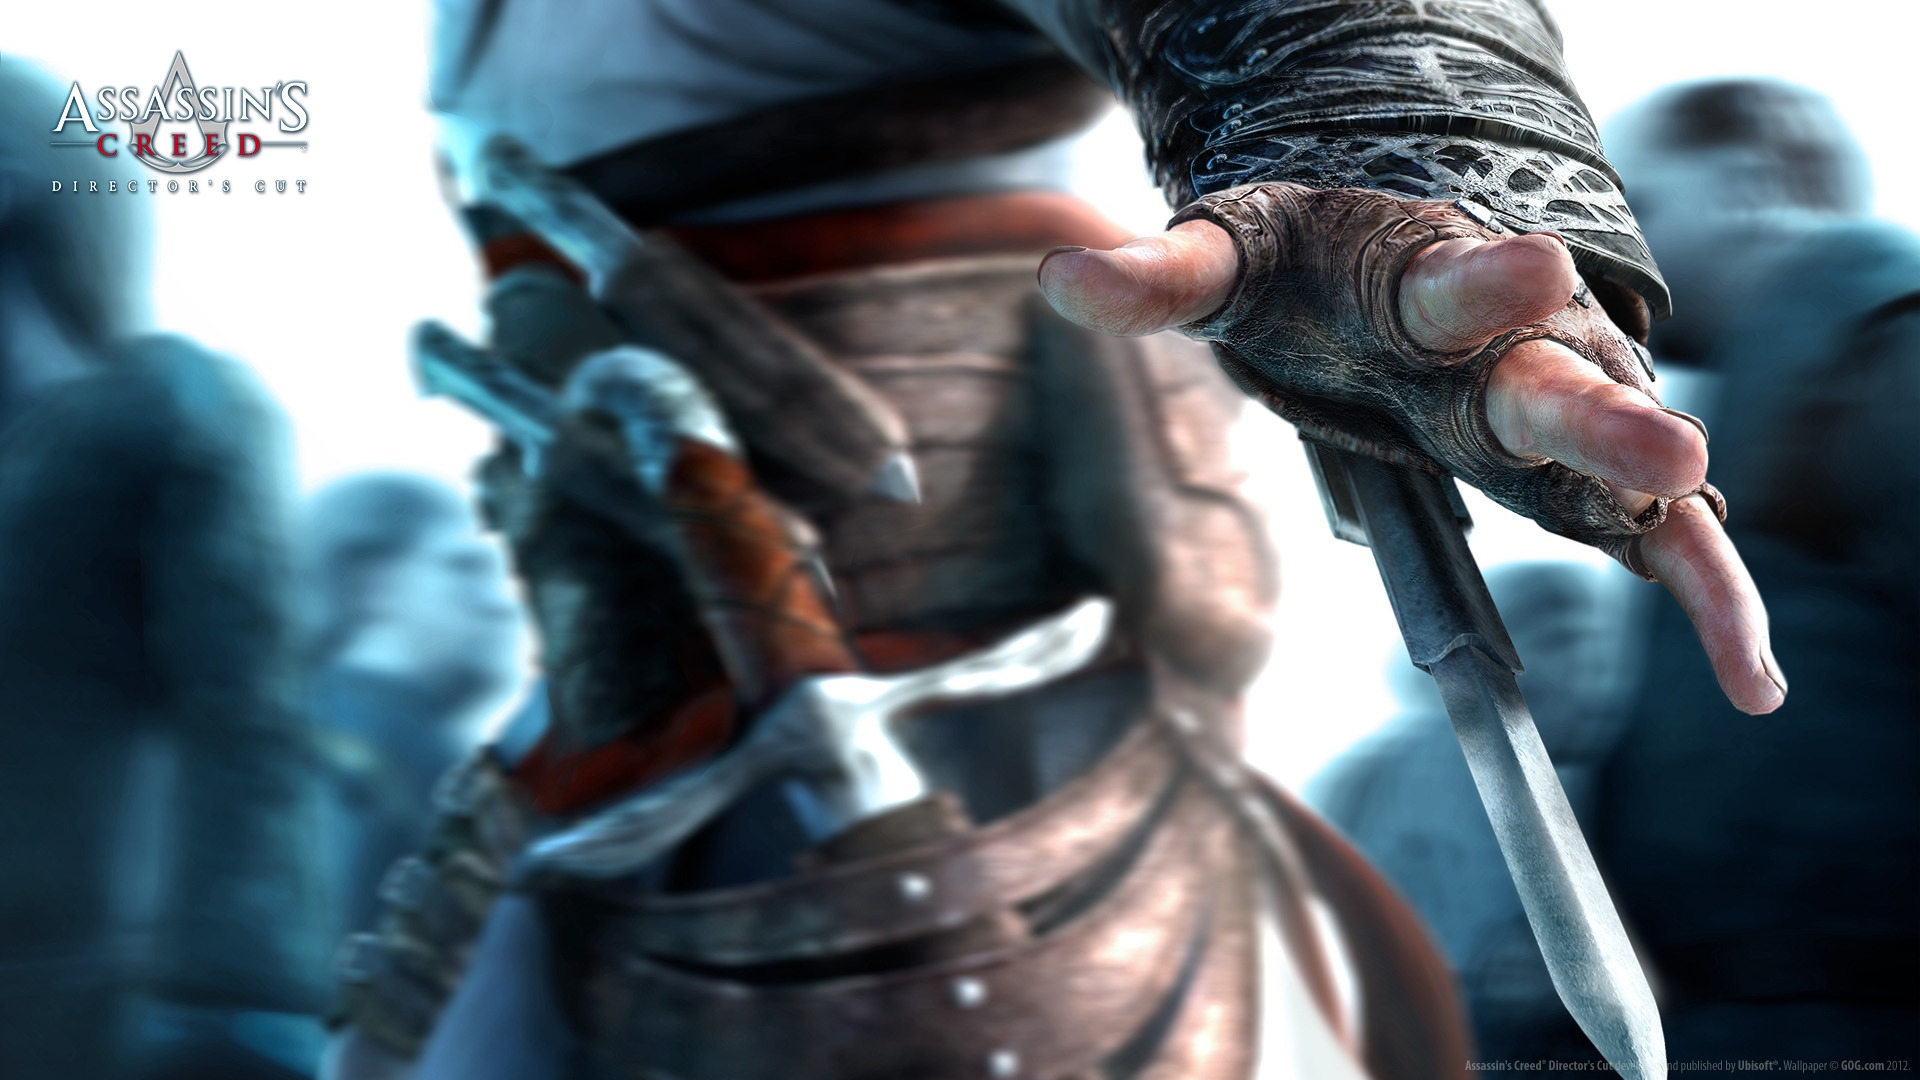 Assassins Creed Hidden Blade for 1920 x 1080 HDTV 1080p resolution